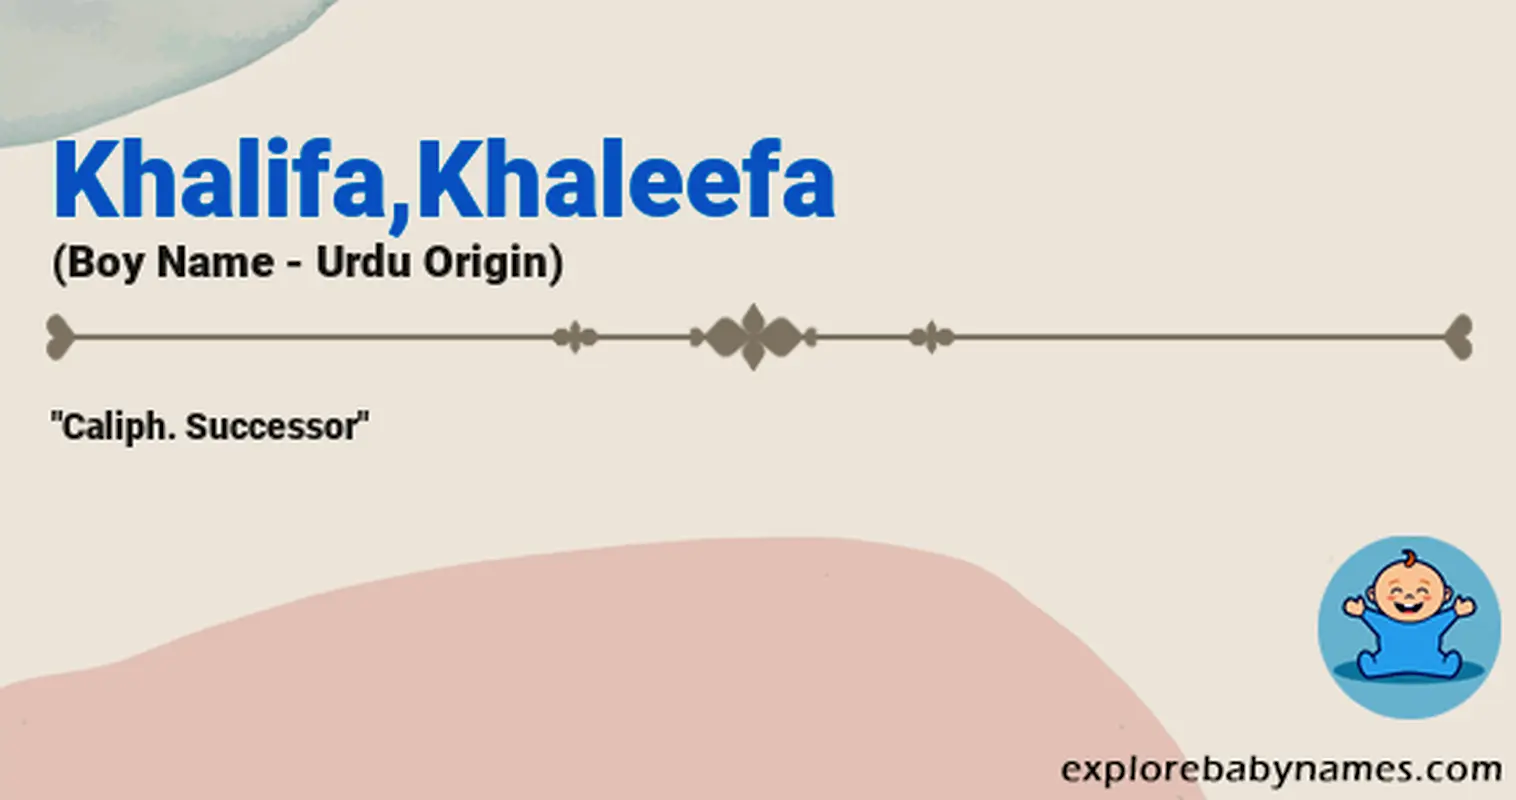 Meaning of Khalifa,Khaleefa